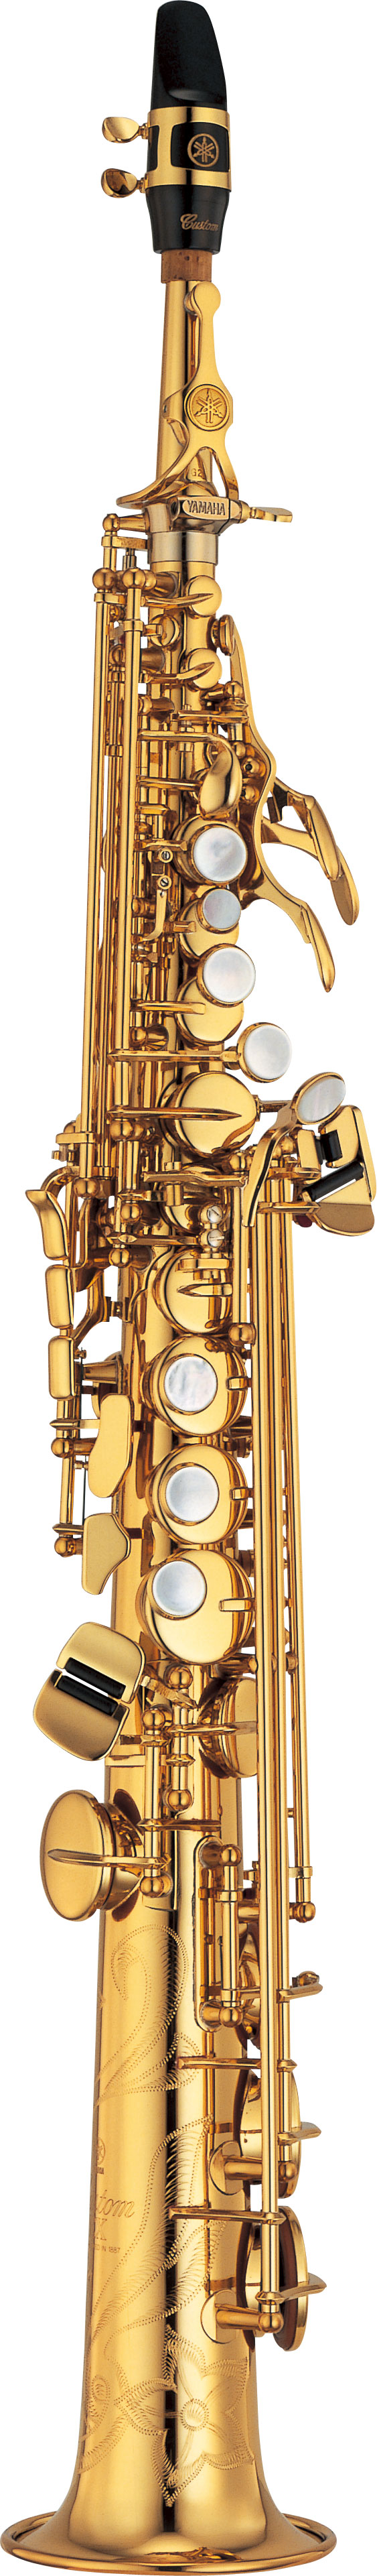 Yamaha YSS-875EX - Sopransaxophon - Gold Lackiert